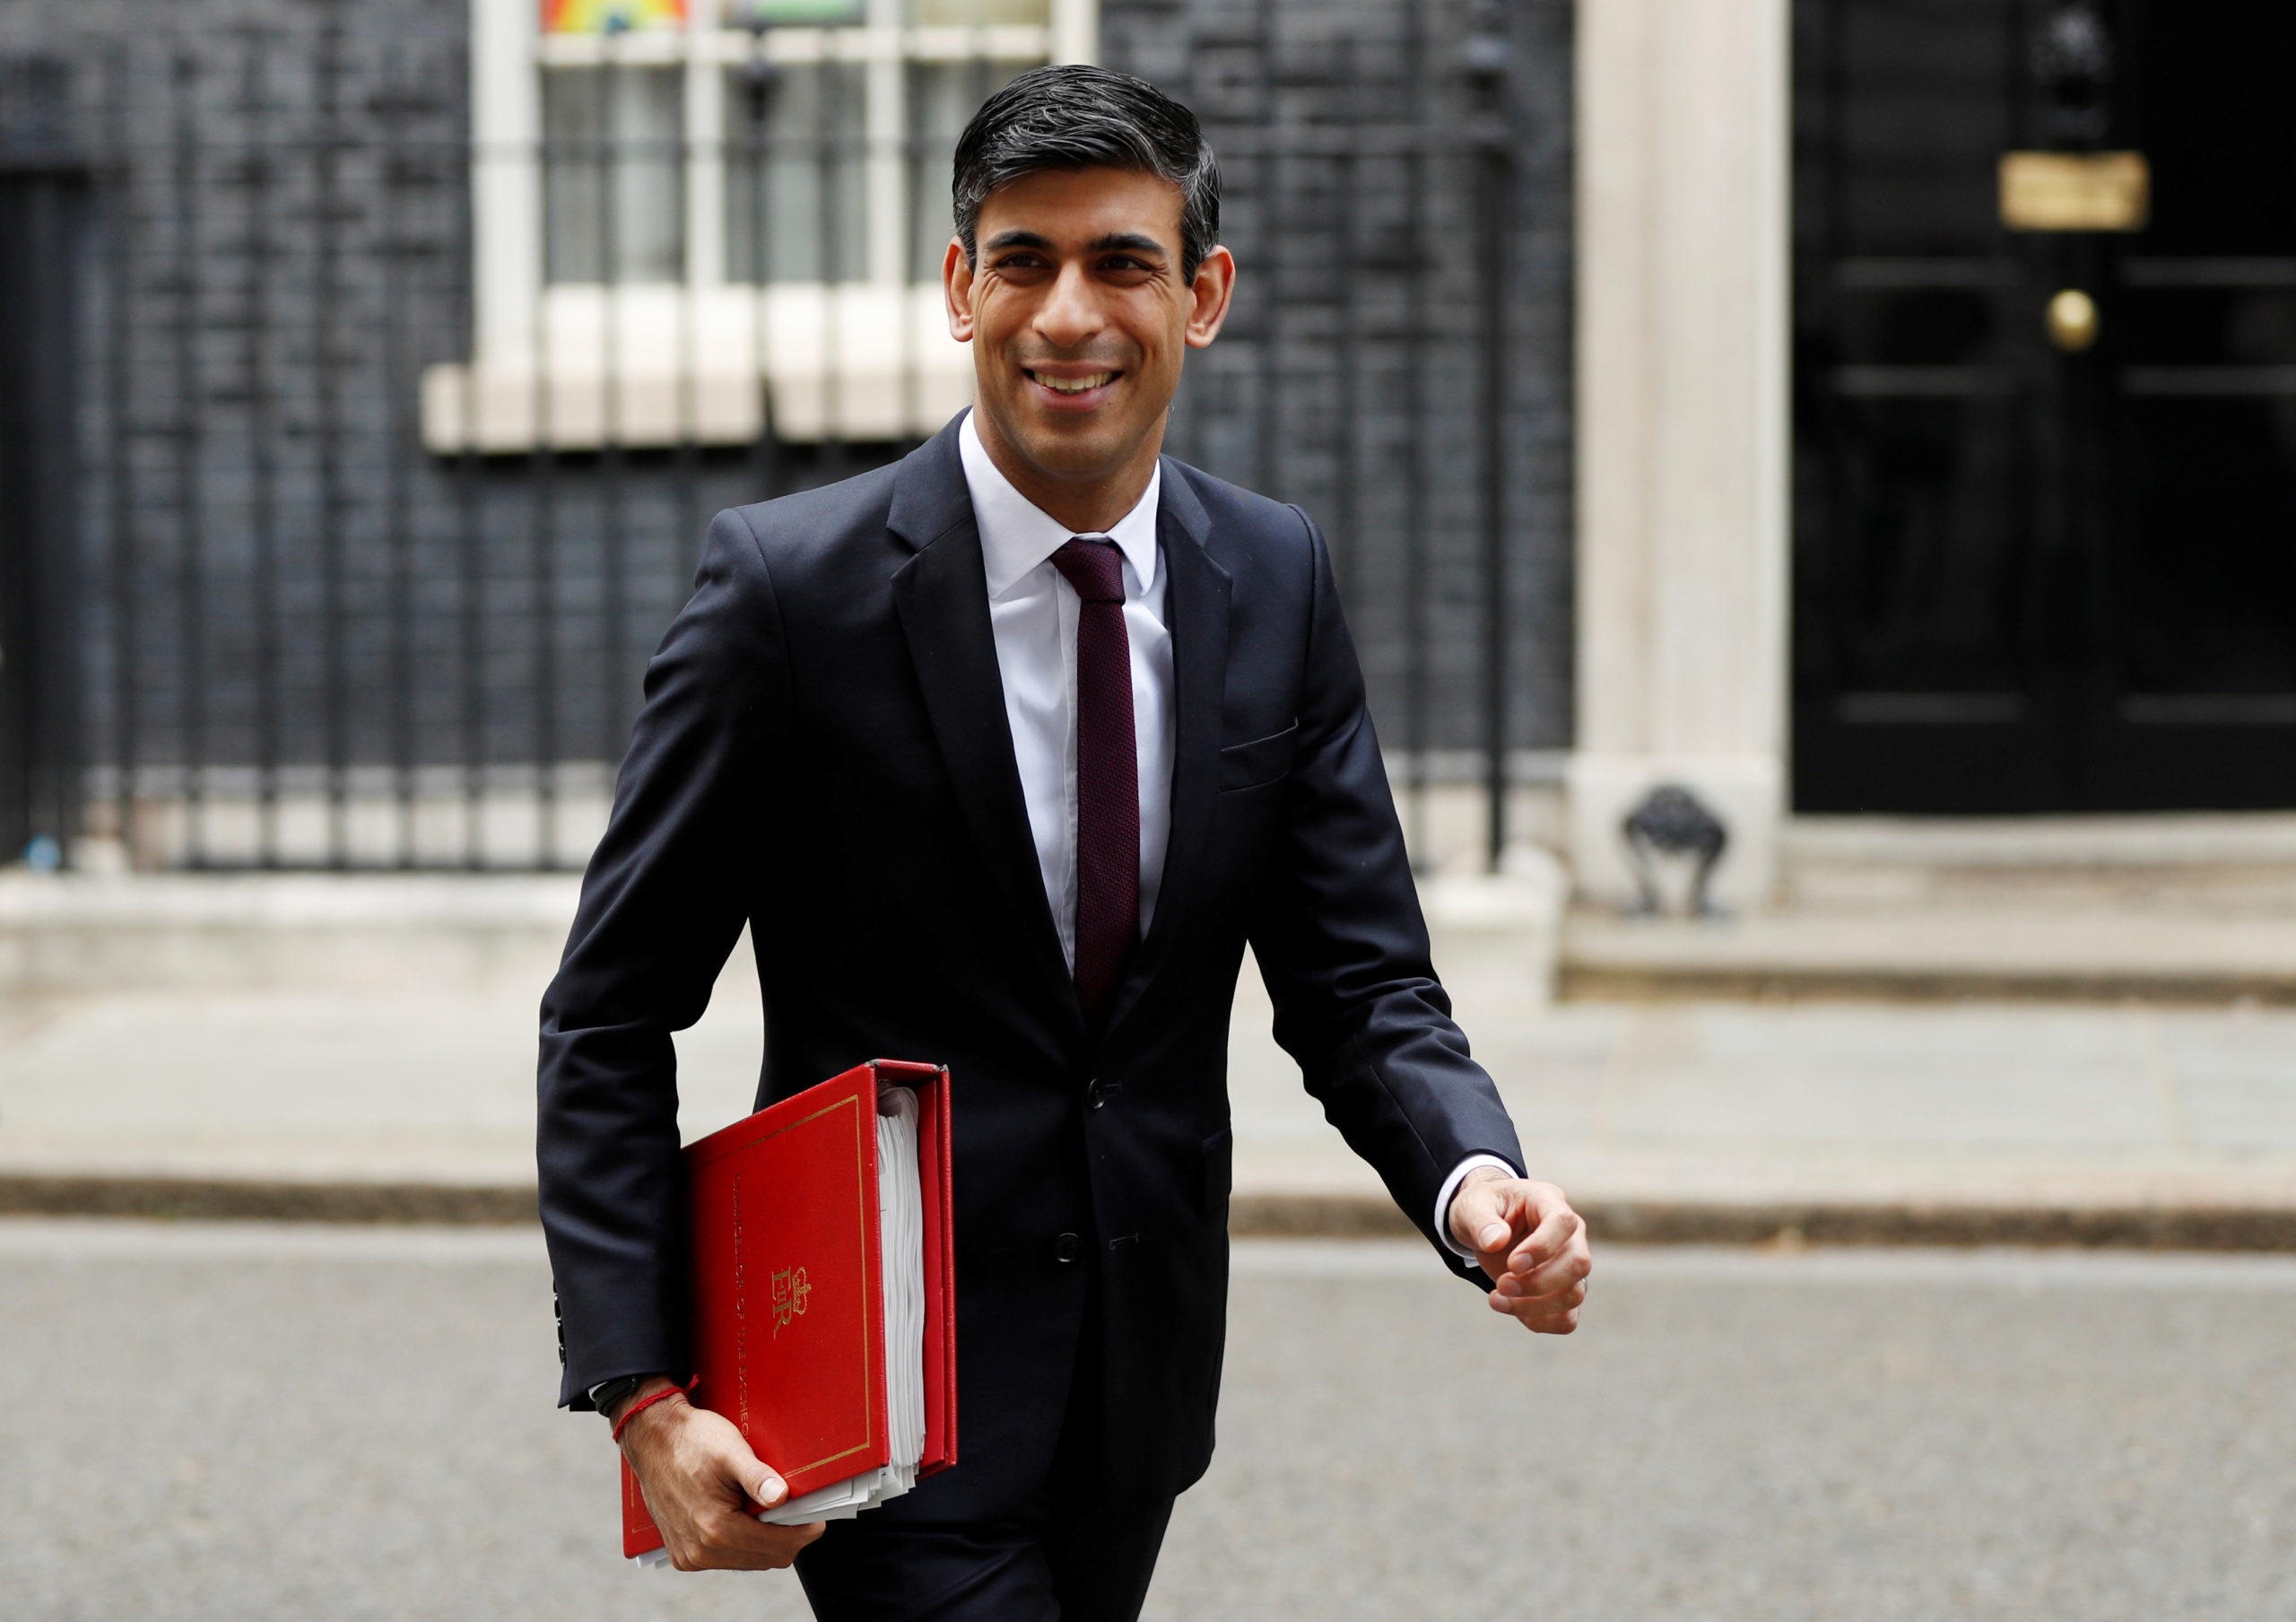 Londres réfléchit à assouplir ses règles de quarantaine, selon un ministre